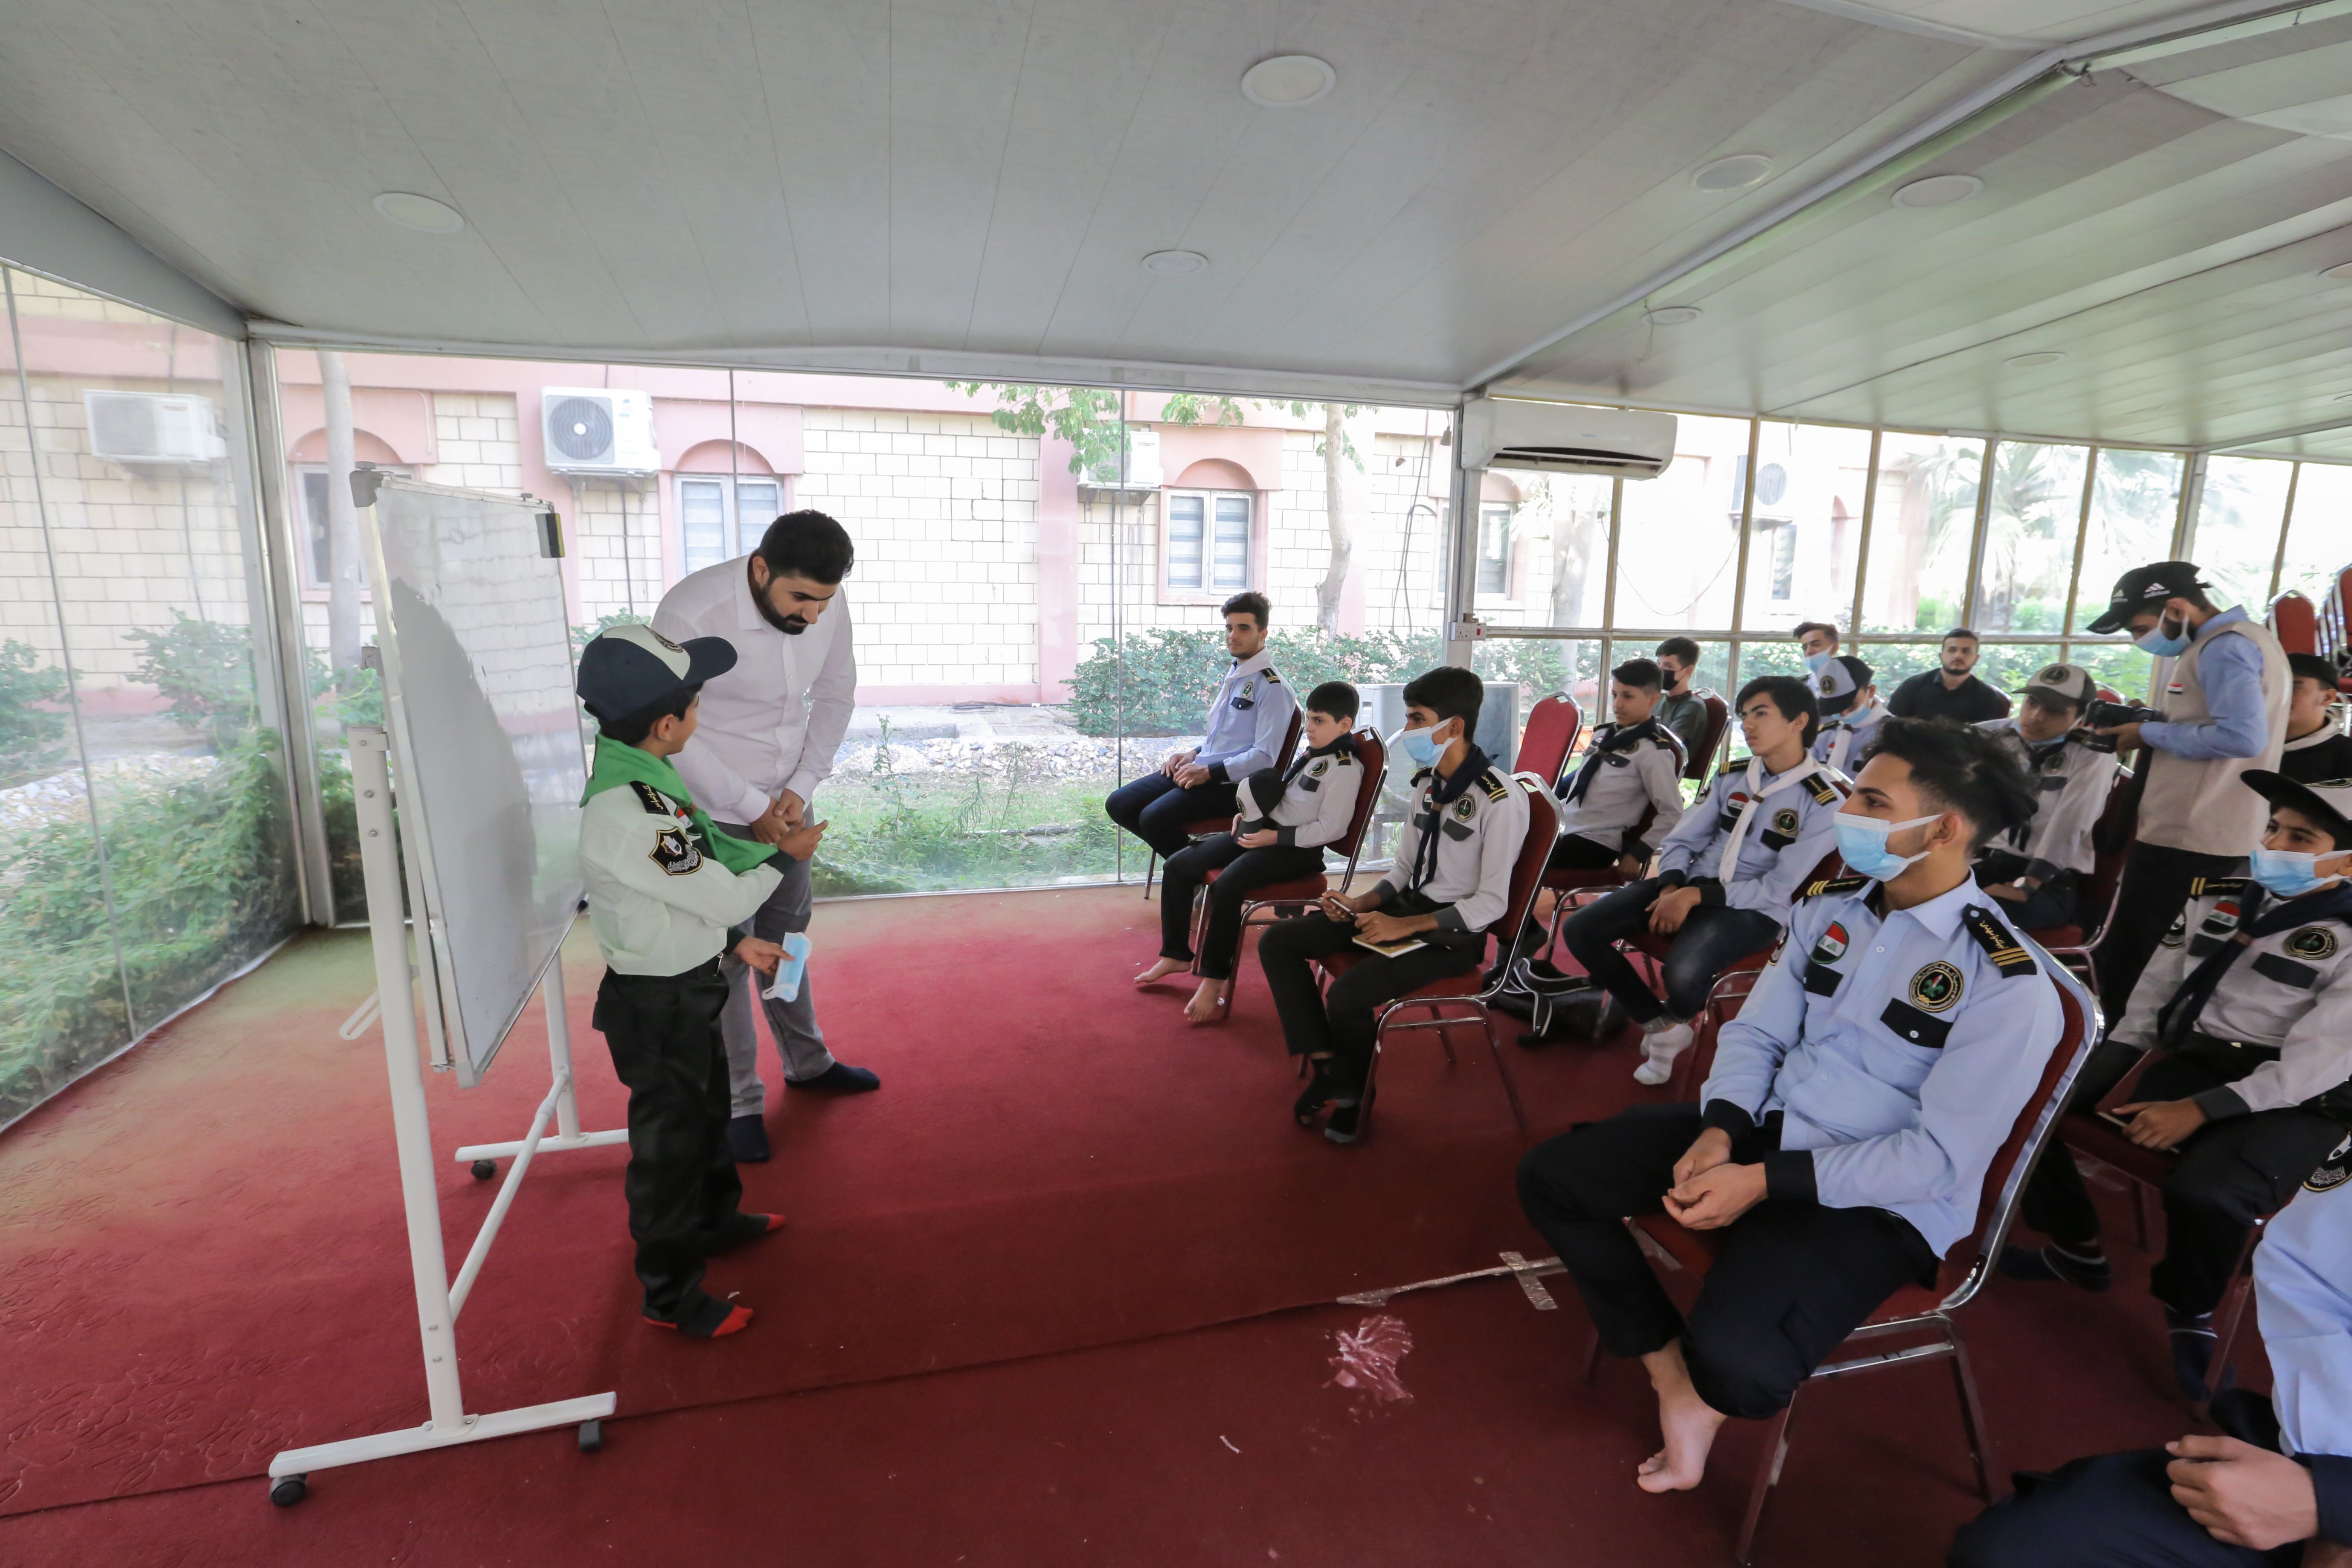 مركز المشاريع القرآنية يقيم دورة خاصة بالصوت والنغم لطلبة فرقة القراء والمنشدين في العتبة العباسية المقدسة